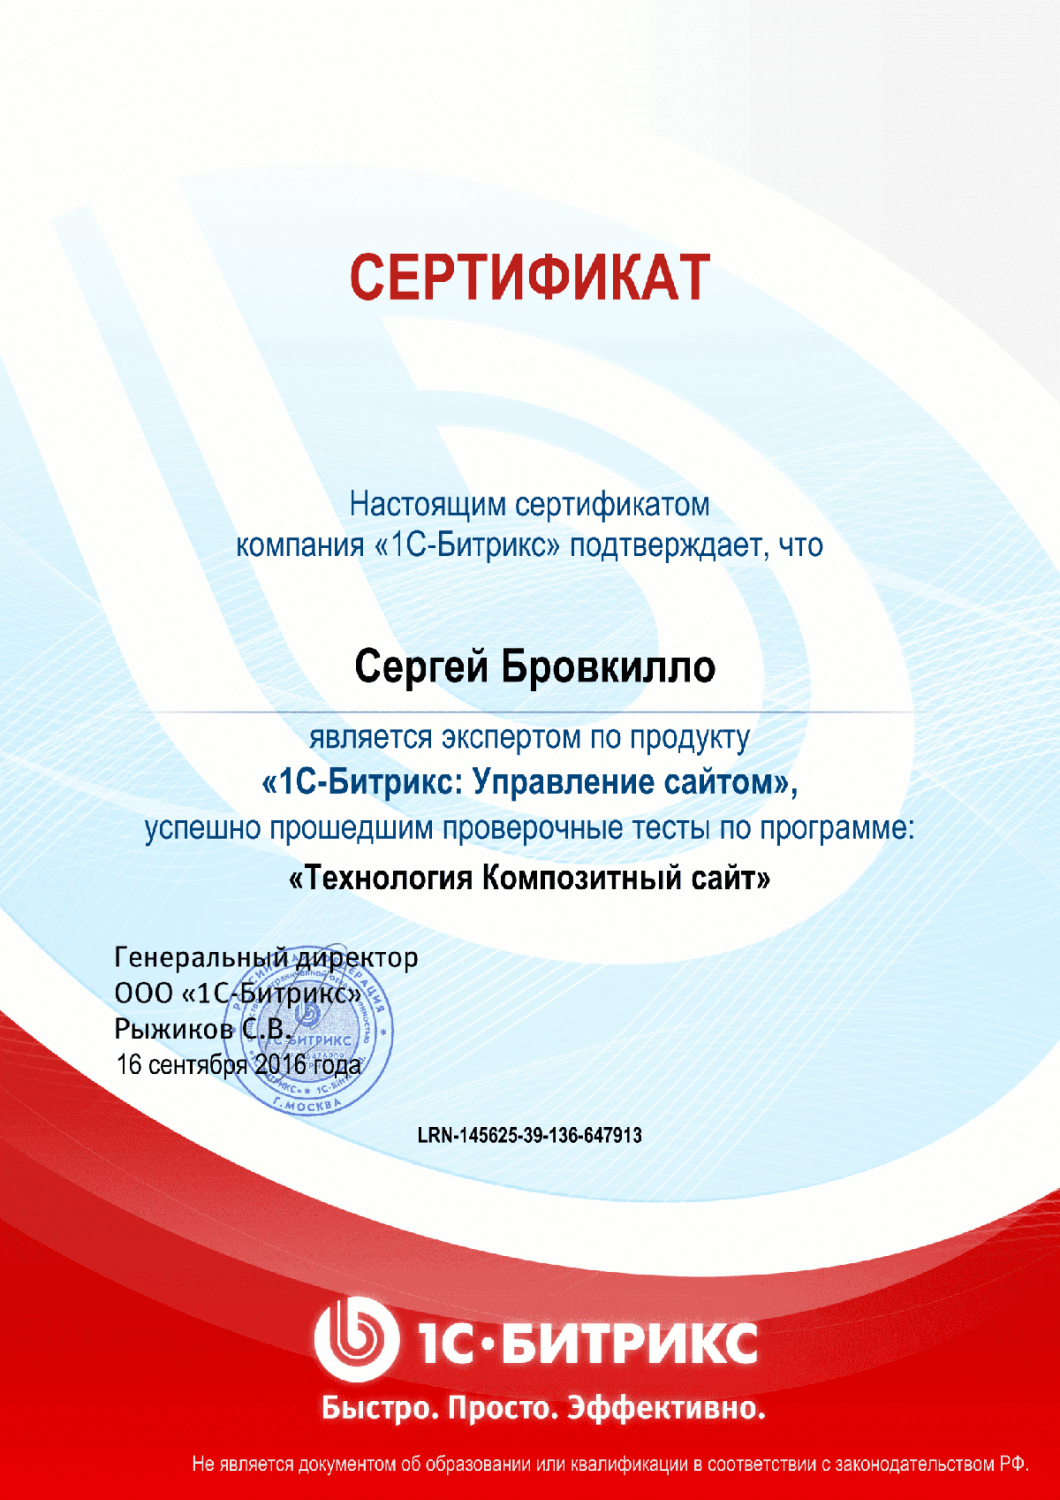 Сертификат "Технология Композитный сайт" в Сочи